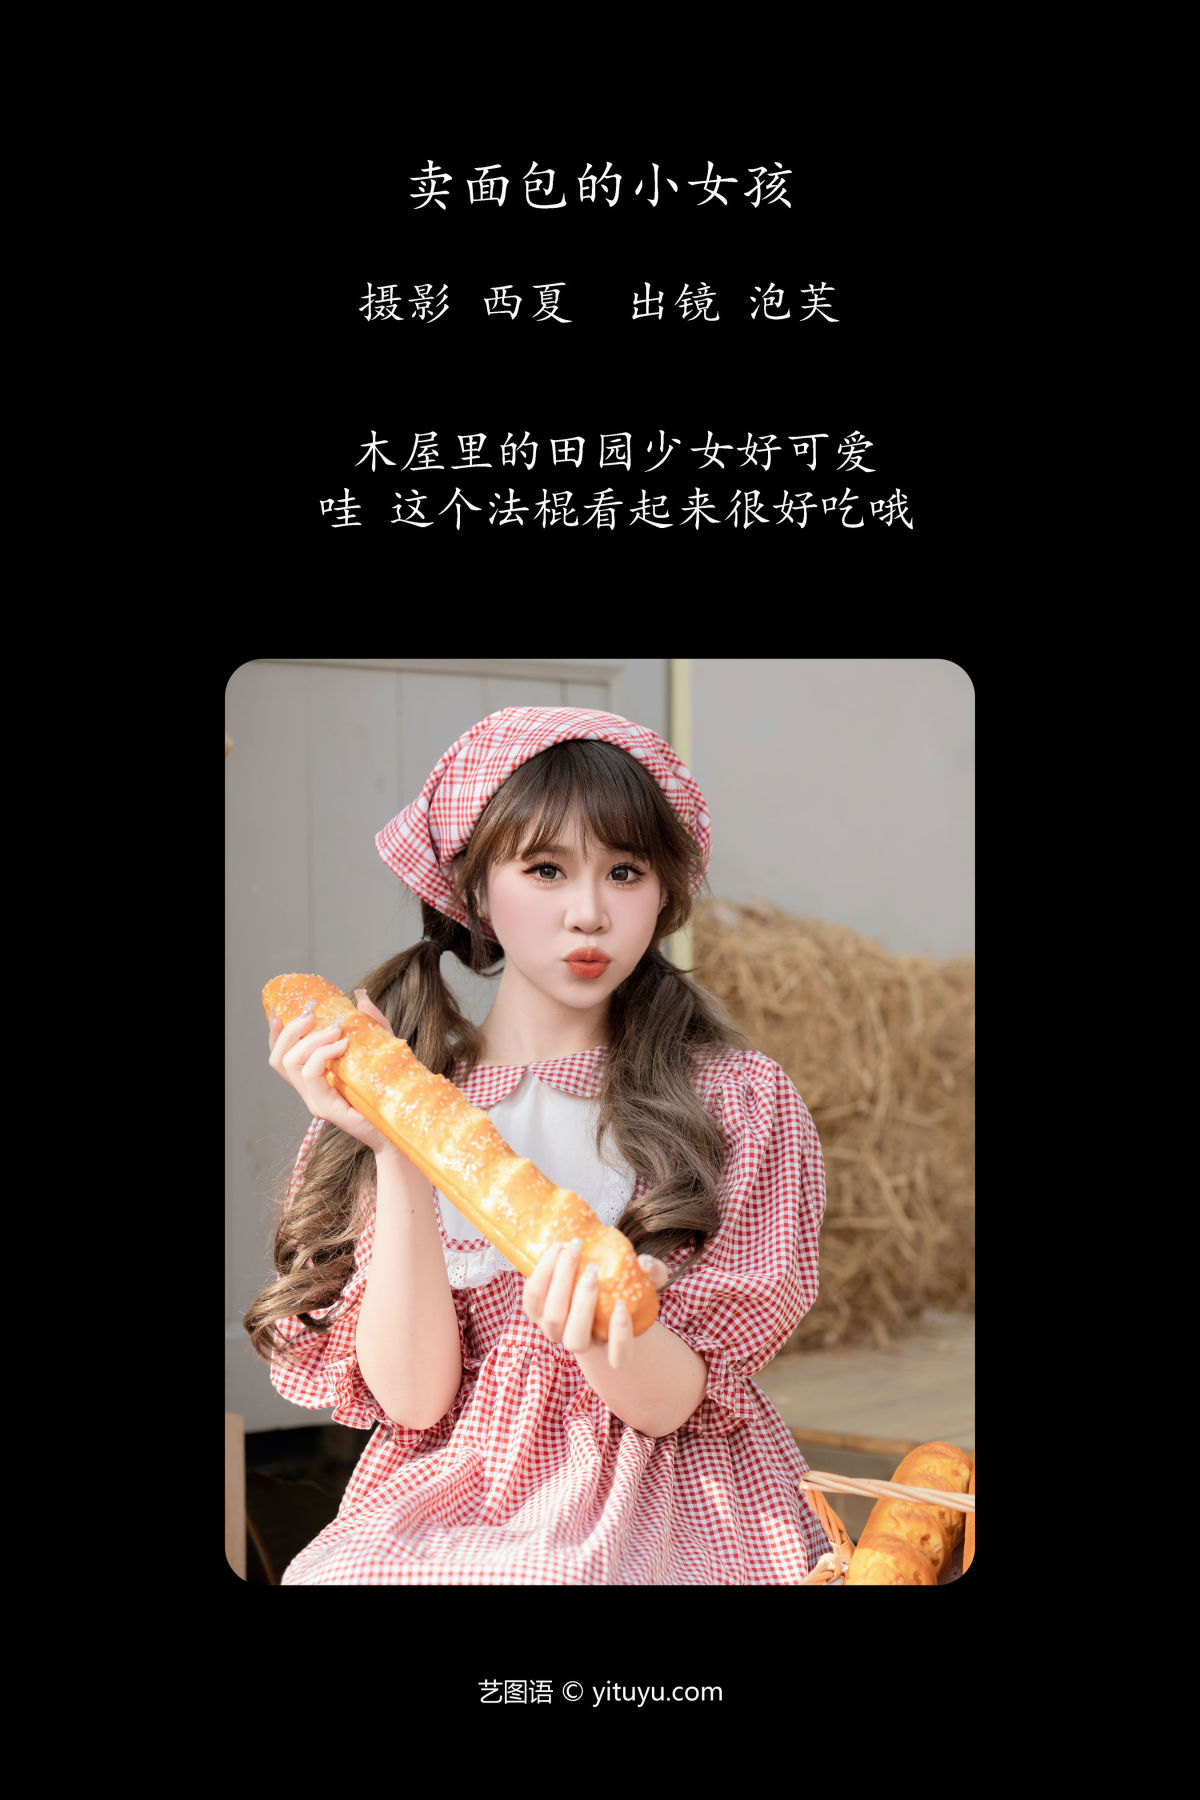 西夏_泡芙小方《卖面包的小女孩》美图作品图片2